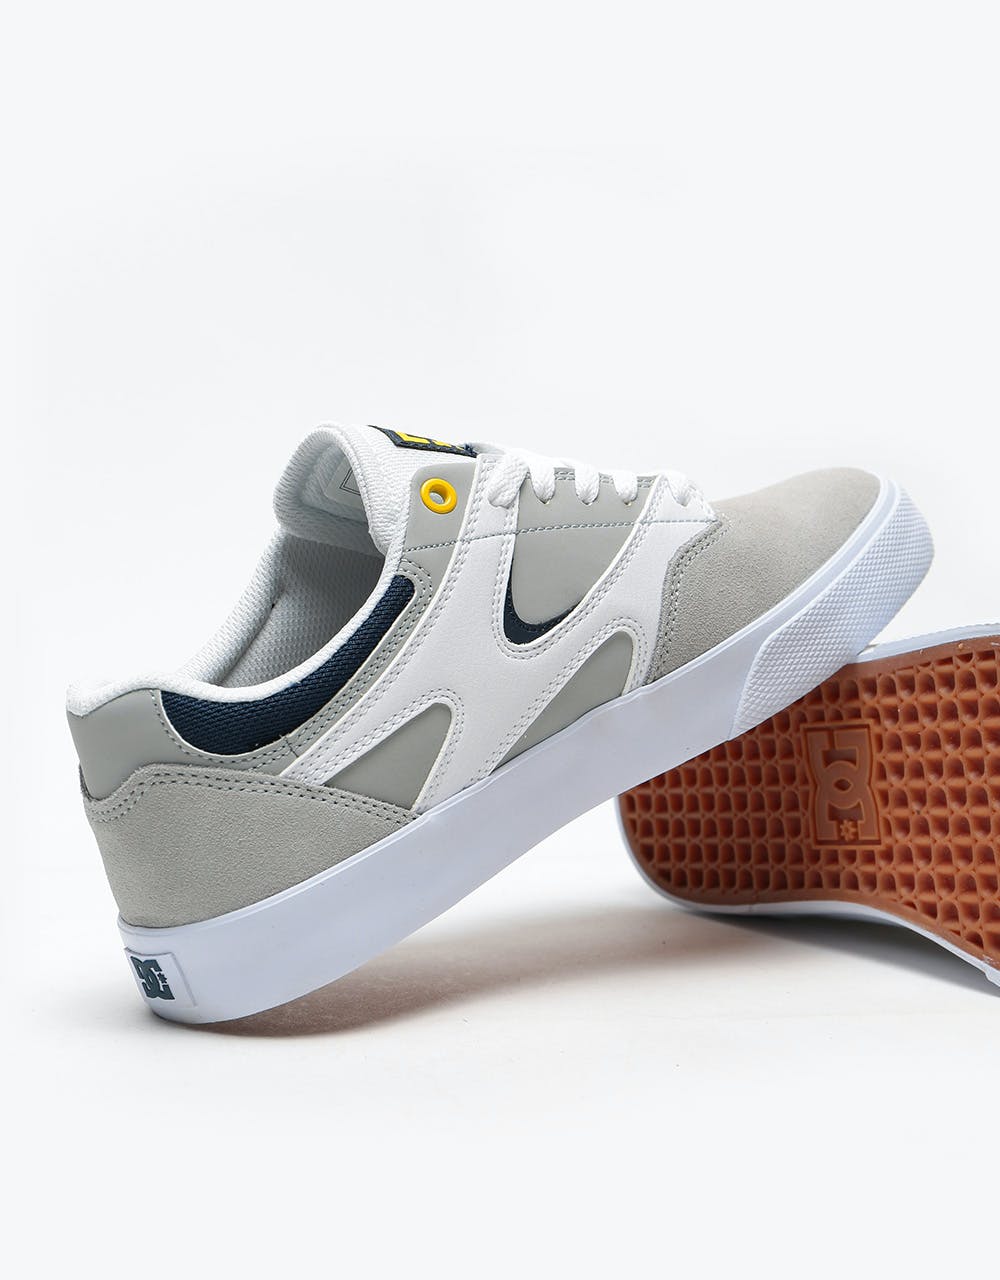 DC Kalis Vulc Skate Shoes - White/Grey/Grey